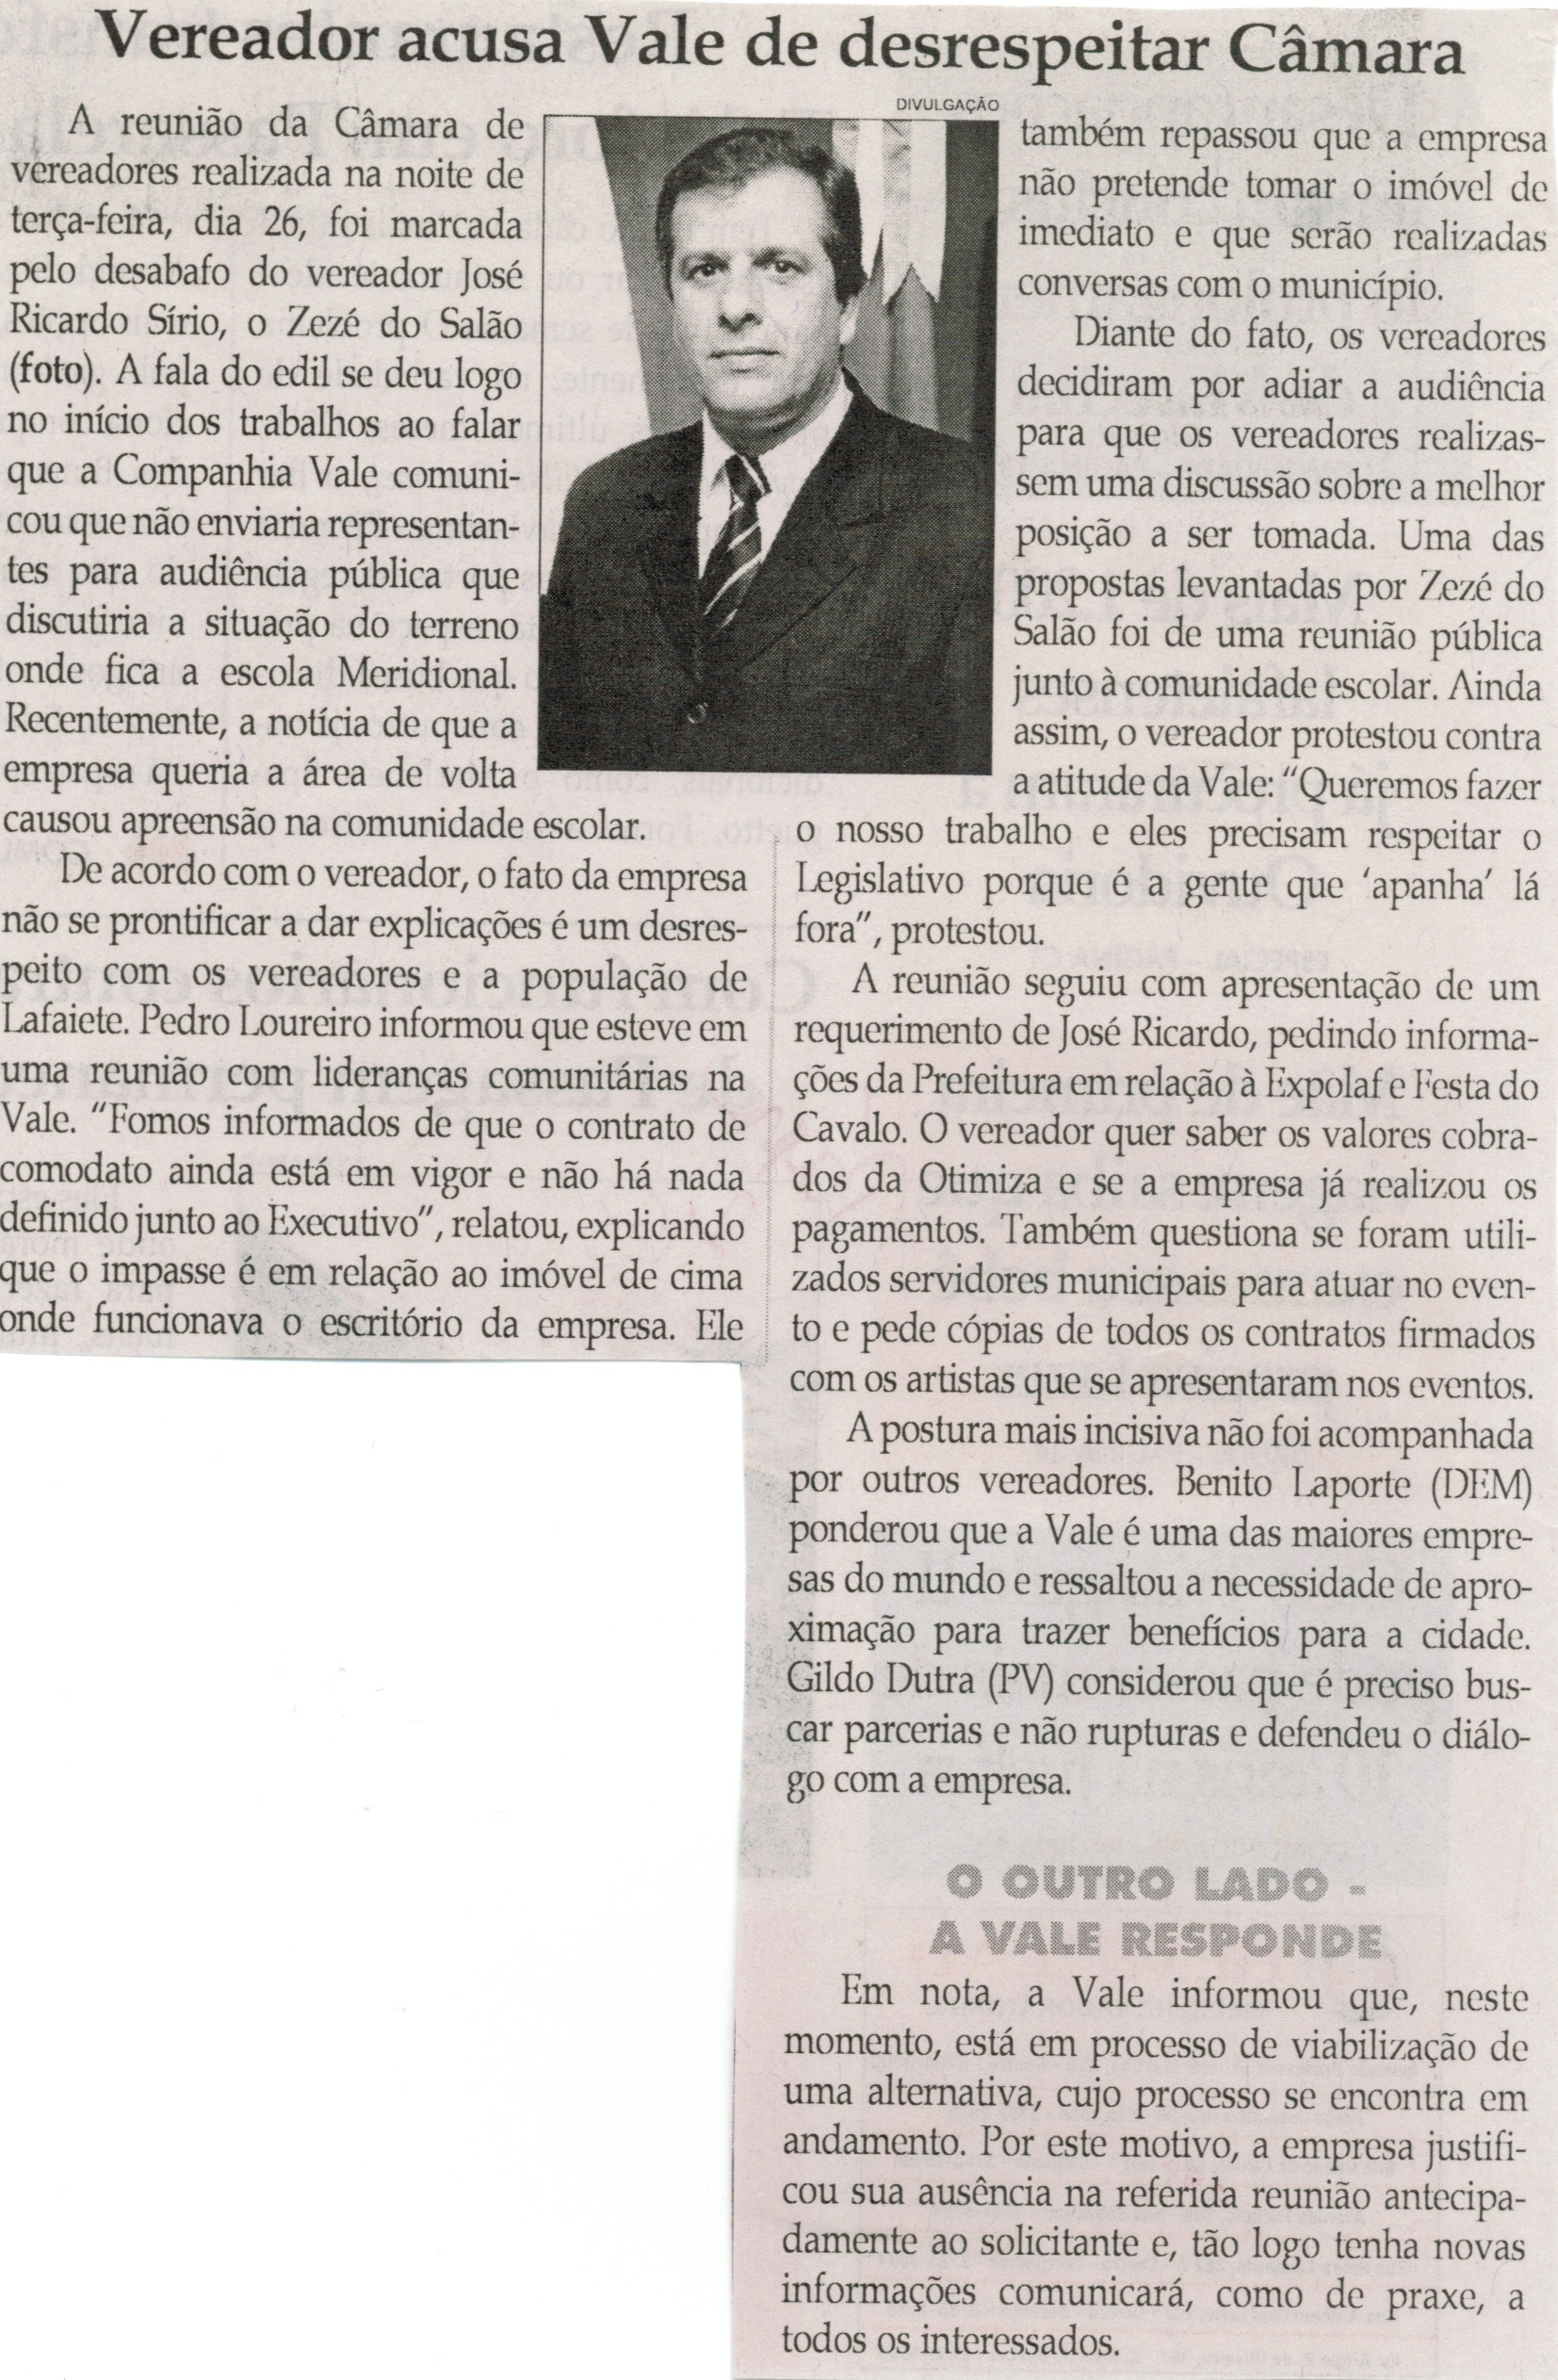 Vereador acusa Vale de desrespeitar Câmara. Jornal Correio da Cidade, Conselheiro Lafaiete, 30 ago. 2014, p. 2.